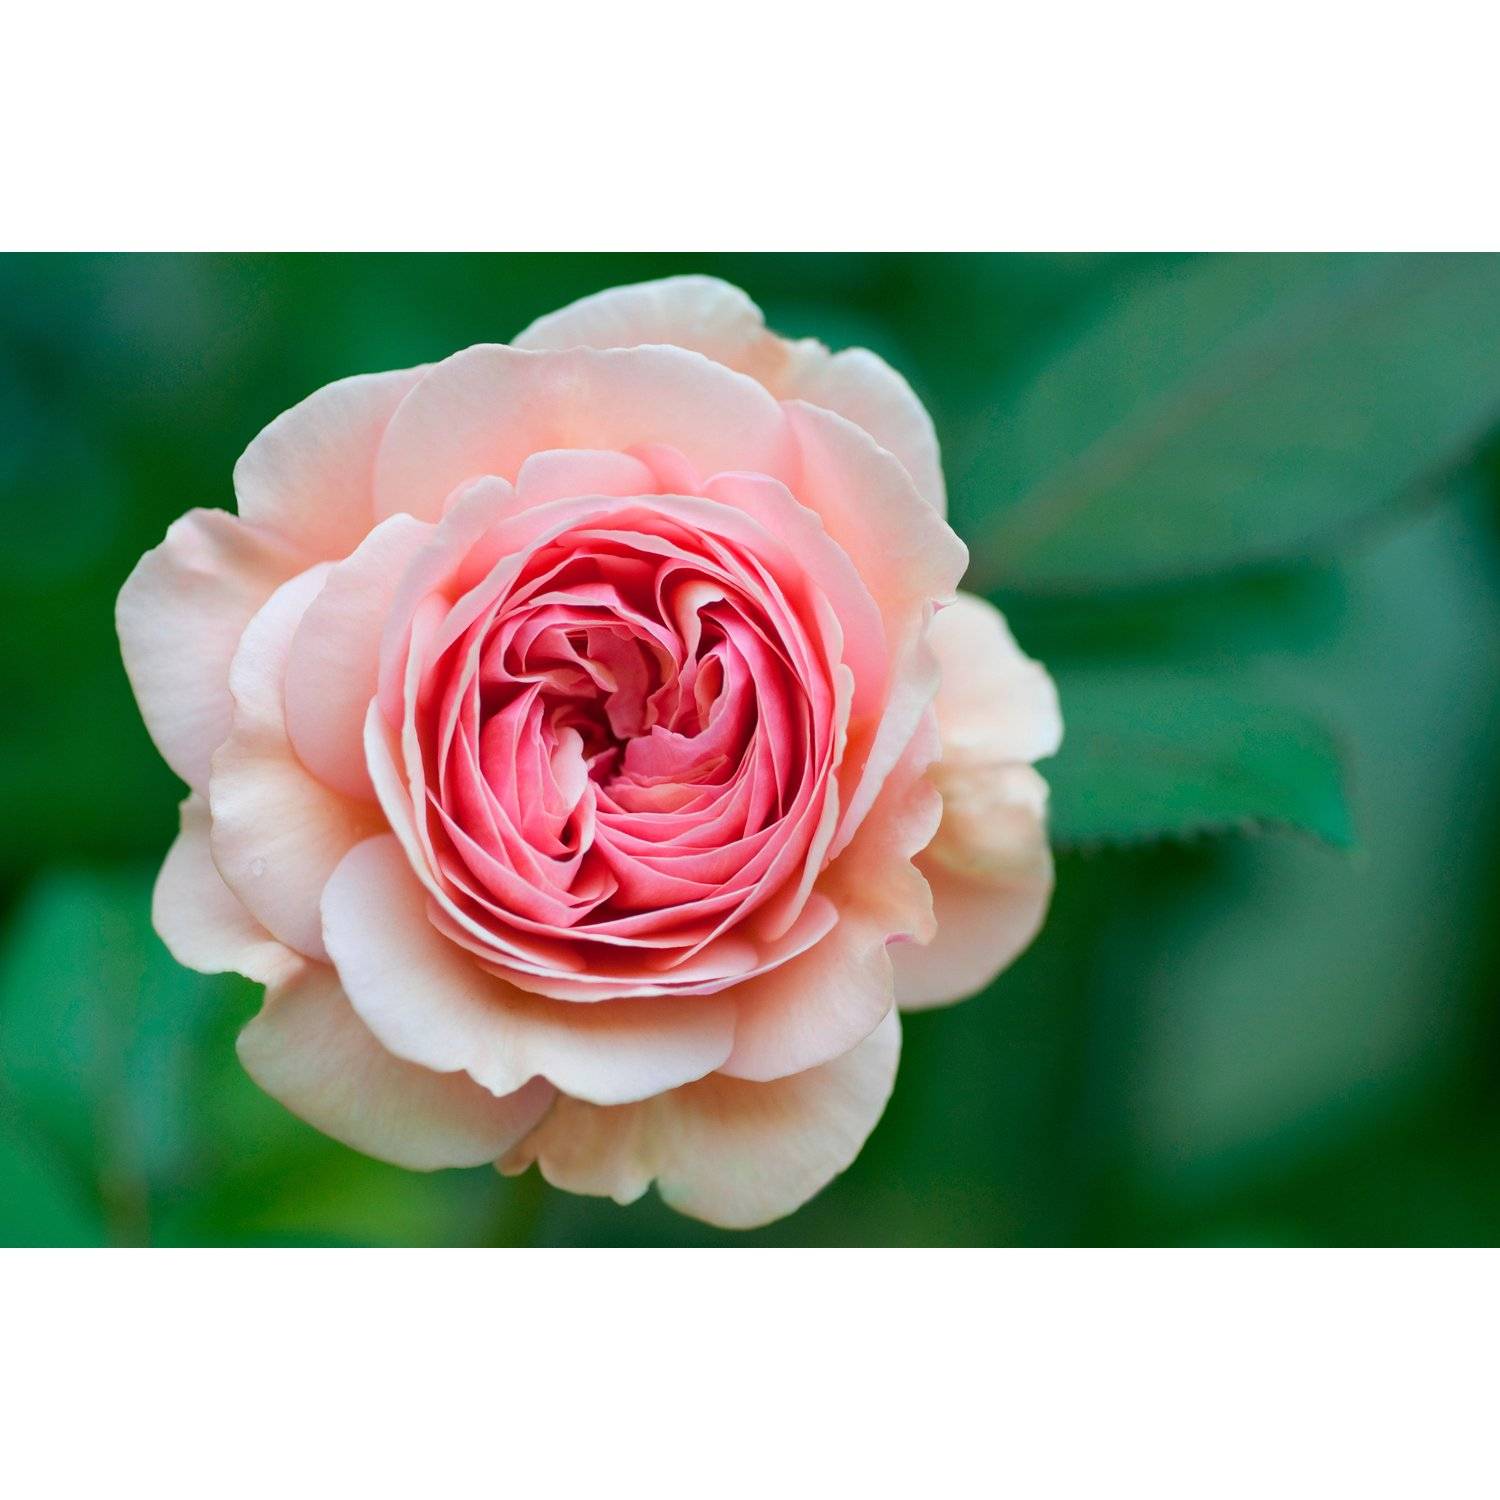 О сортах розы спрей: описание и характеристики, посадка, уход и выращивание